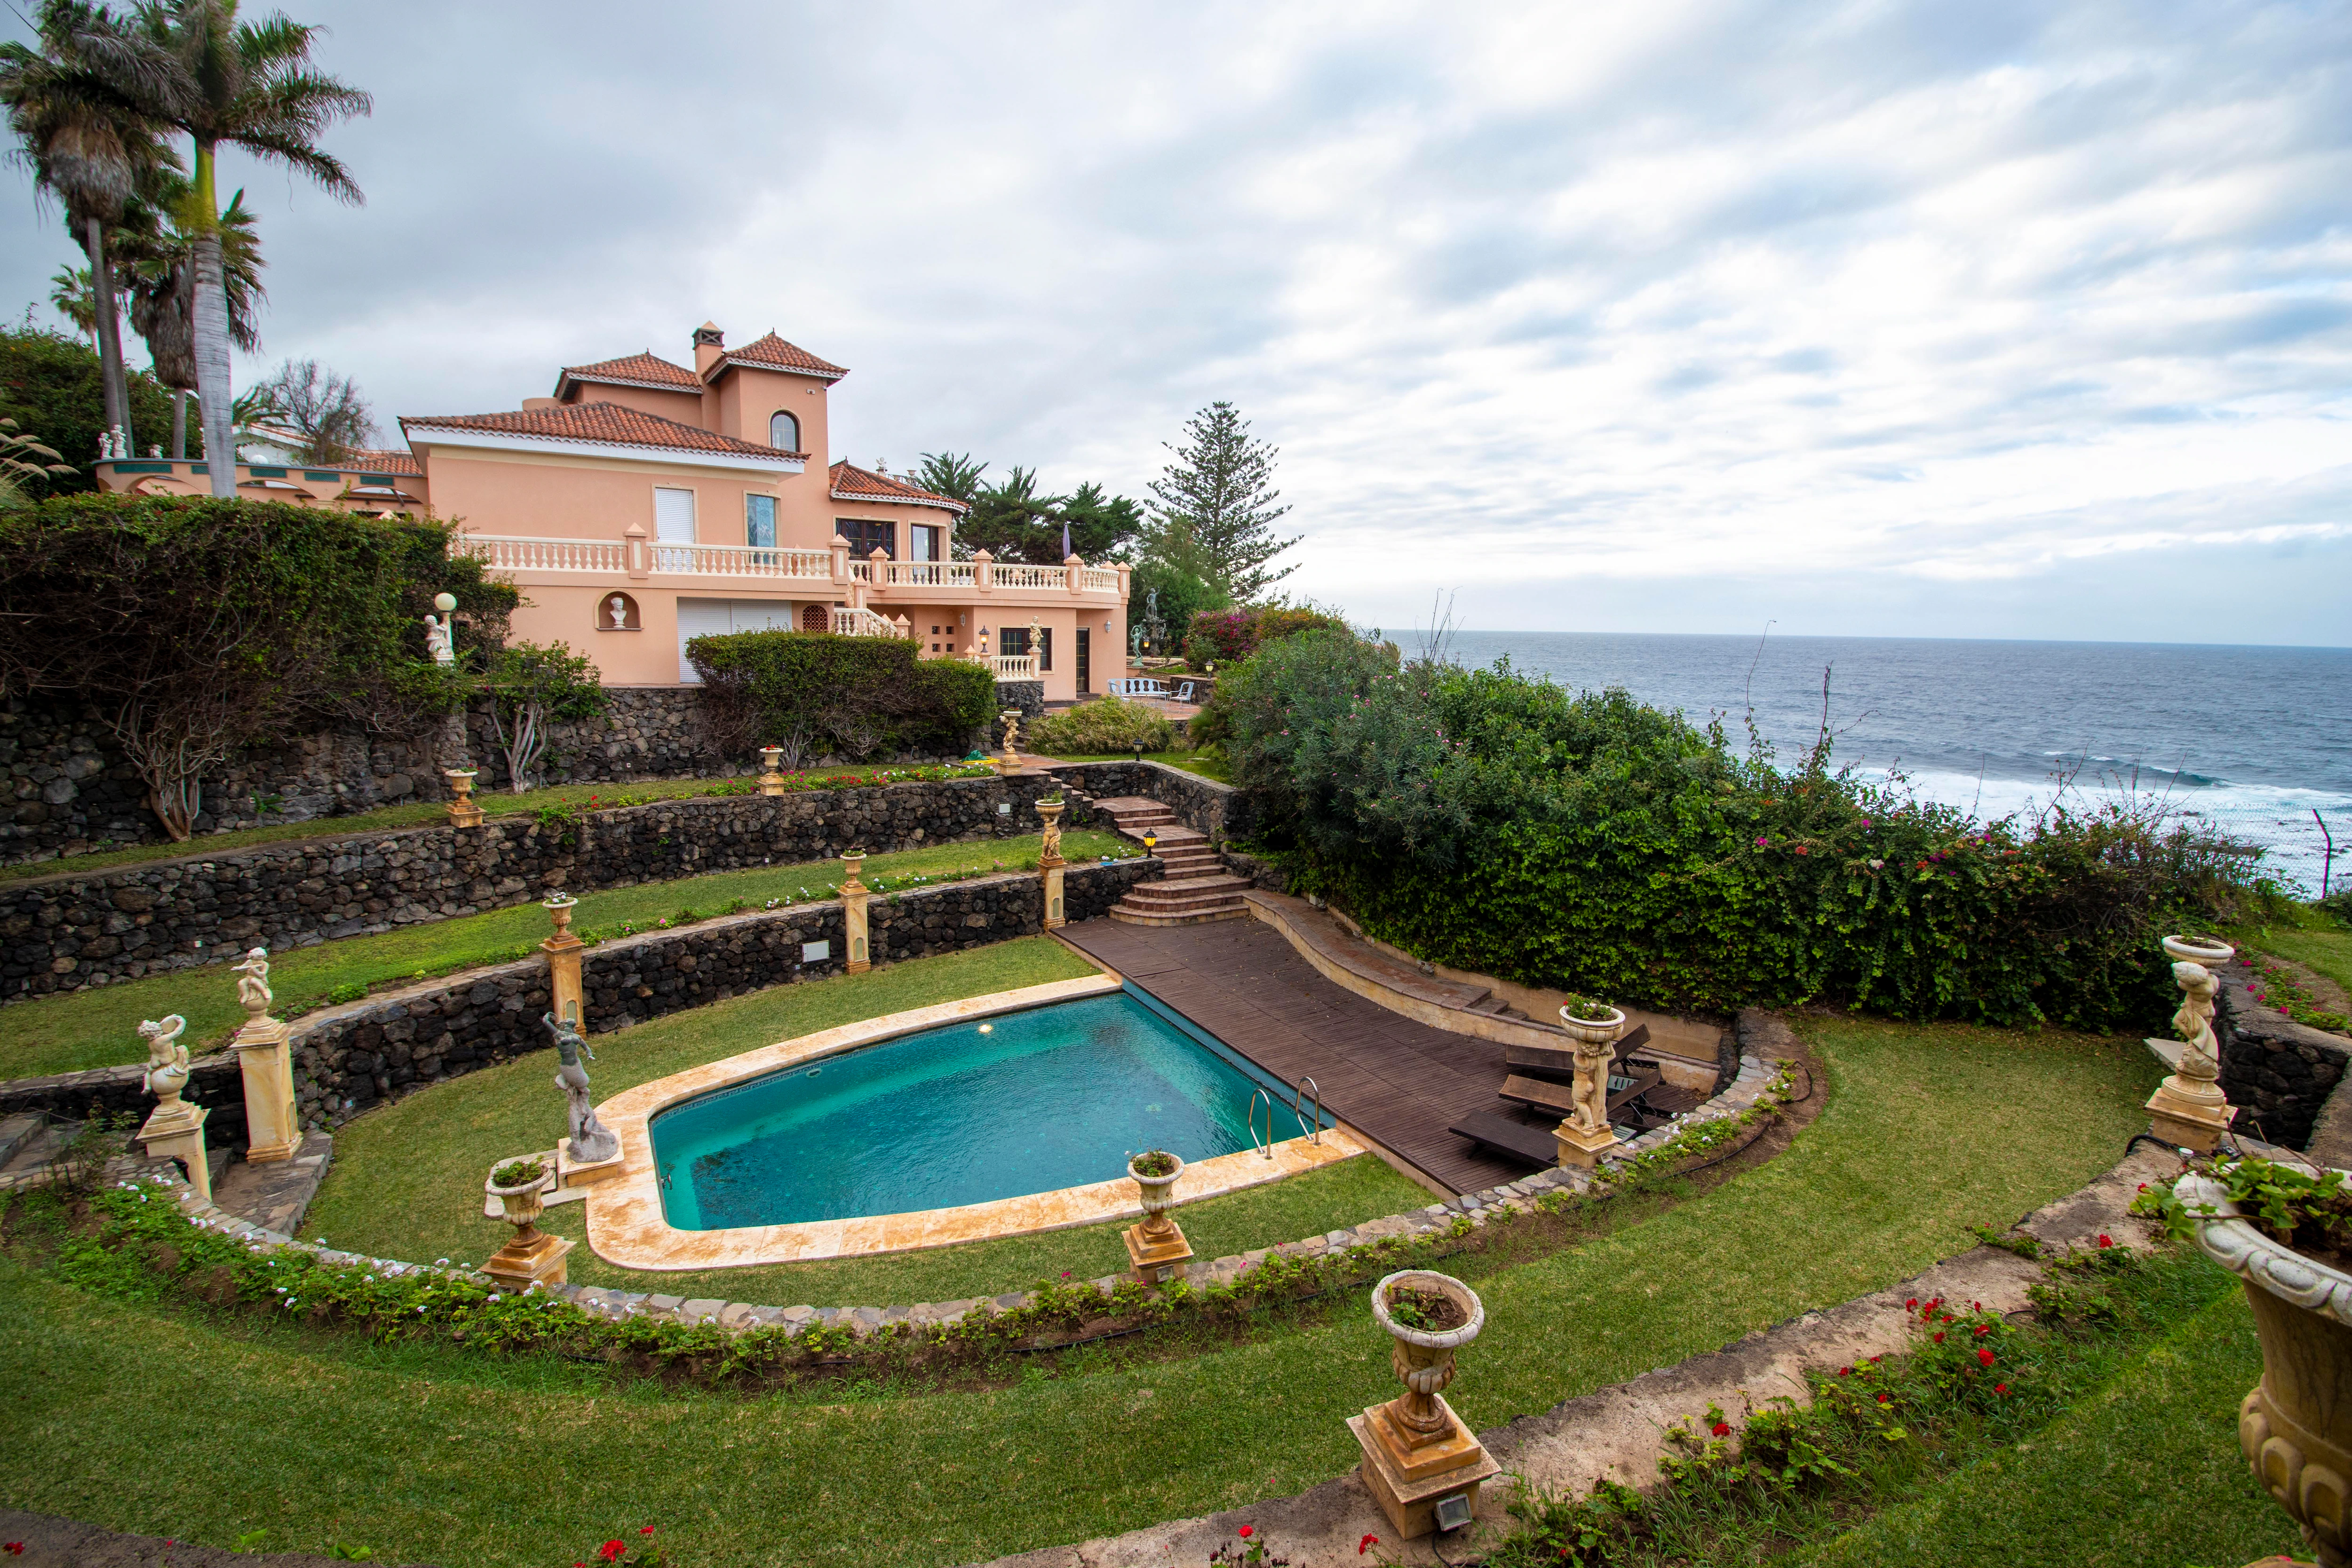 El palacete más lujoso de Tenerife busca dueño. Esta villa de lujo de estilo Mediterráneo se encuentra situada en la costa de Los Realejos, en Tenerife. Una propiedad de 365m2 situada en una parcela de 1038m2 que se vende por 3.800.000€.